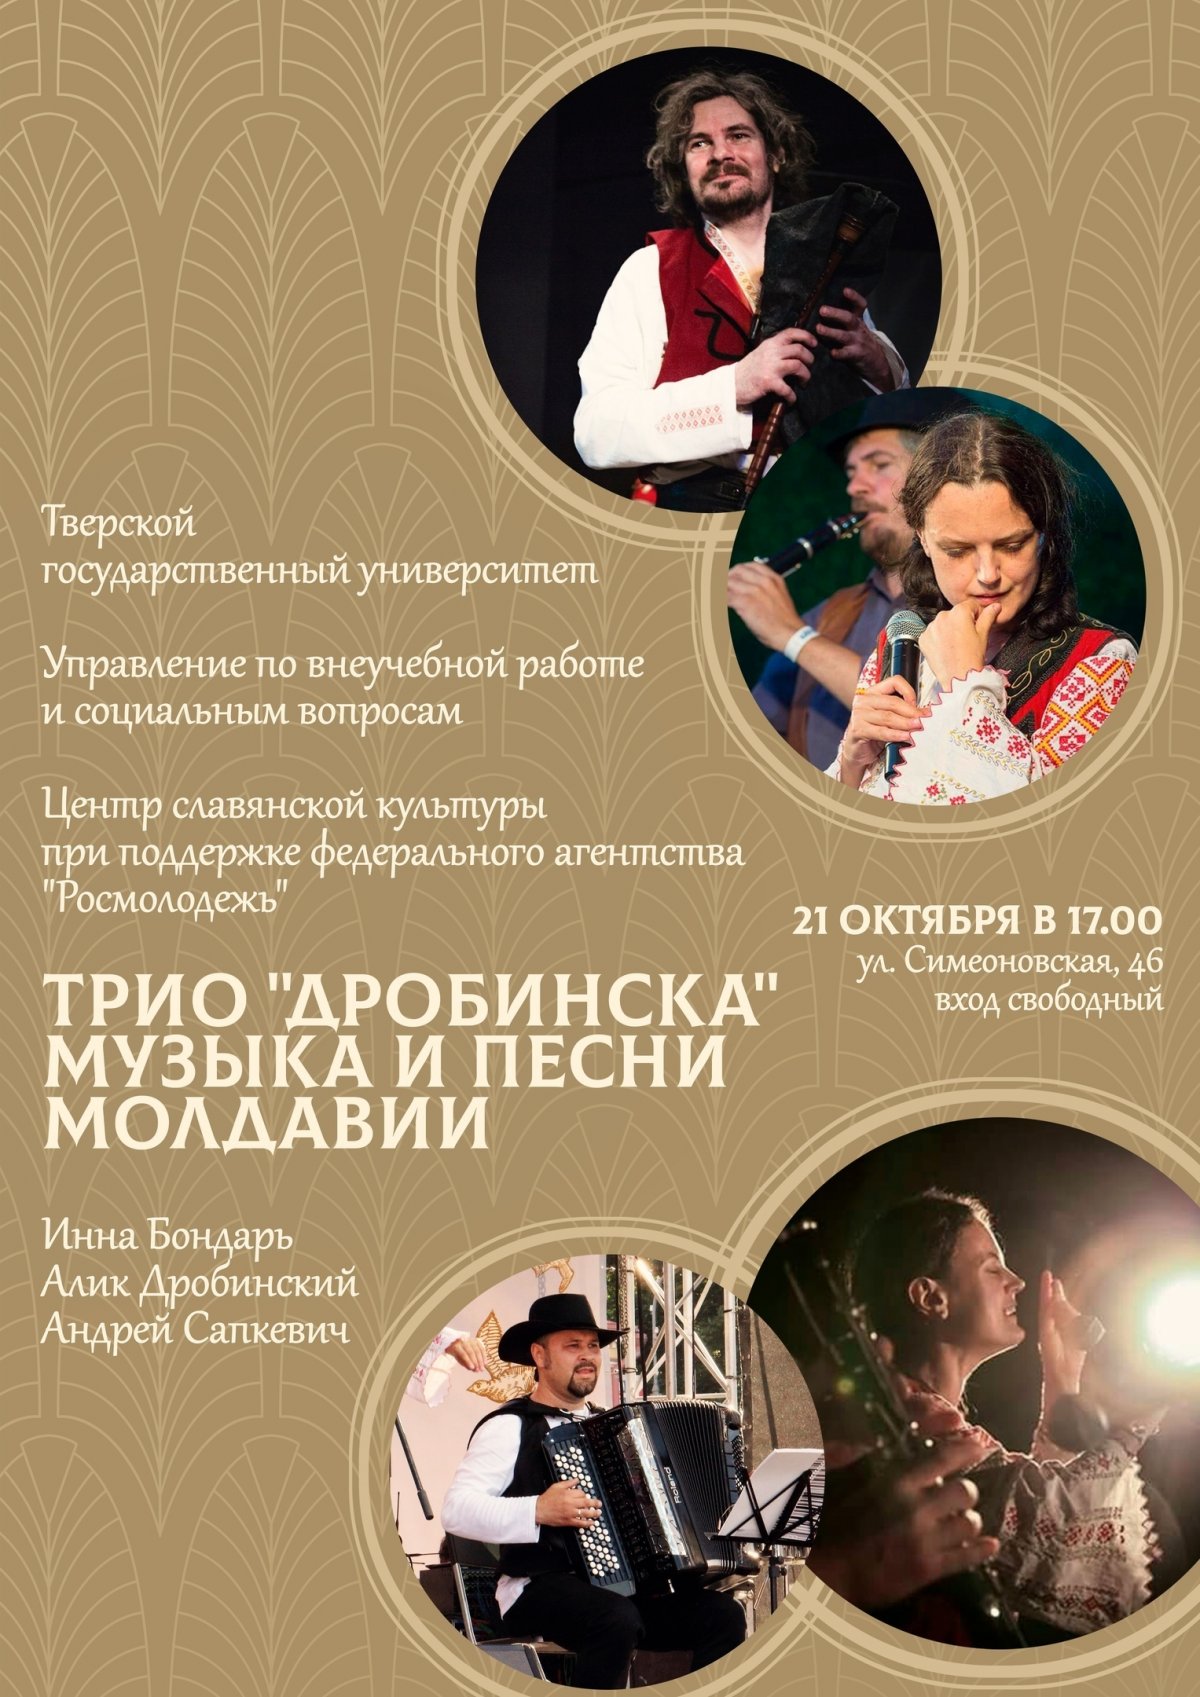 В рамках Фестиваля традиционной культуры предлагаем всем желающим познакомиться с музыкой и песнями Молдавии.